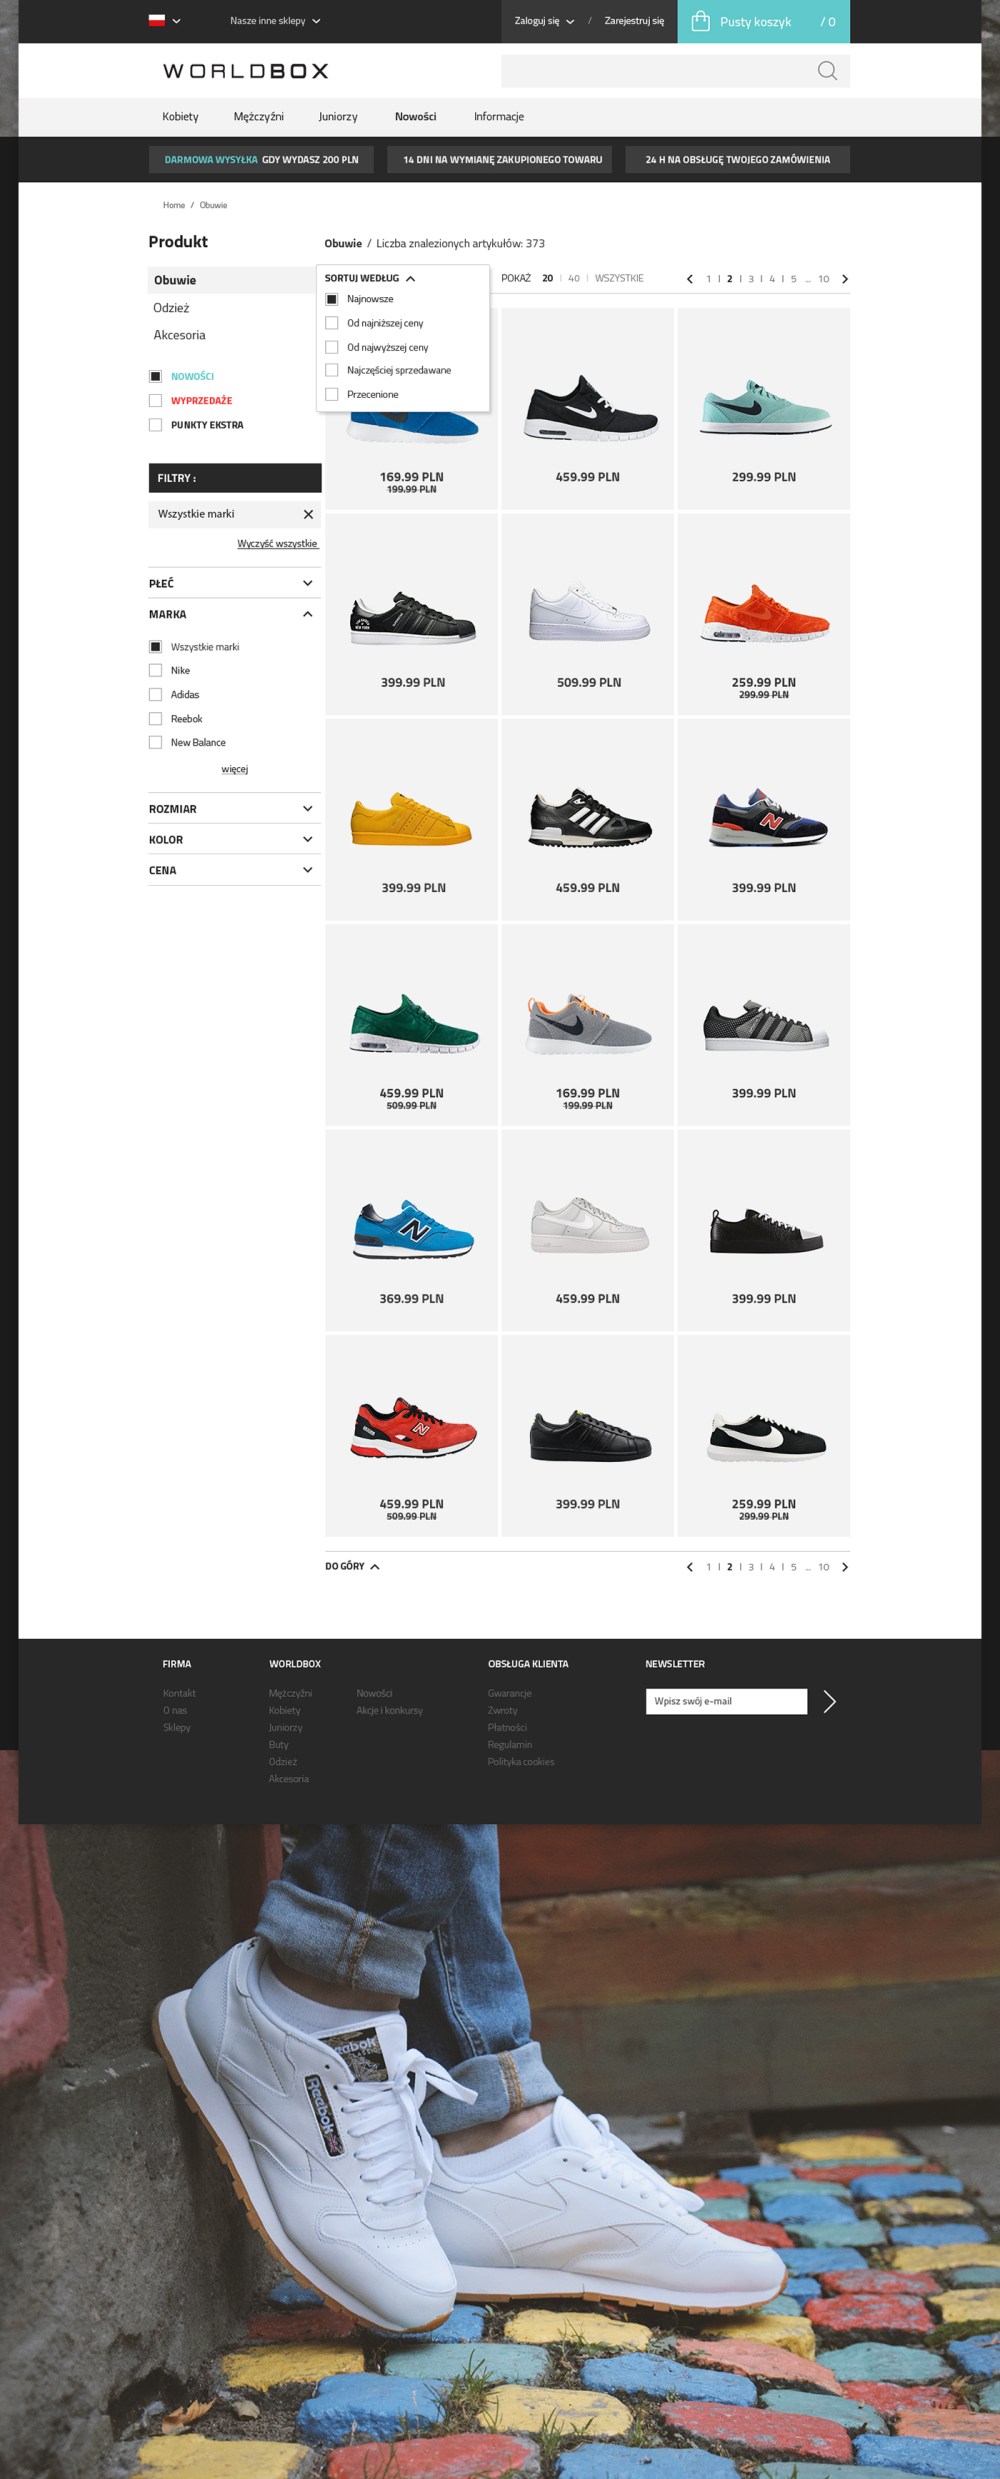 Worldbox-鞋子的购物网站